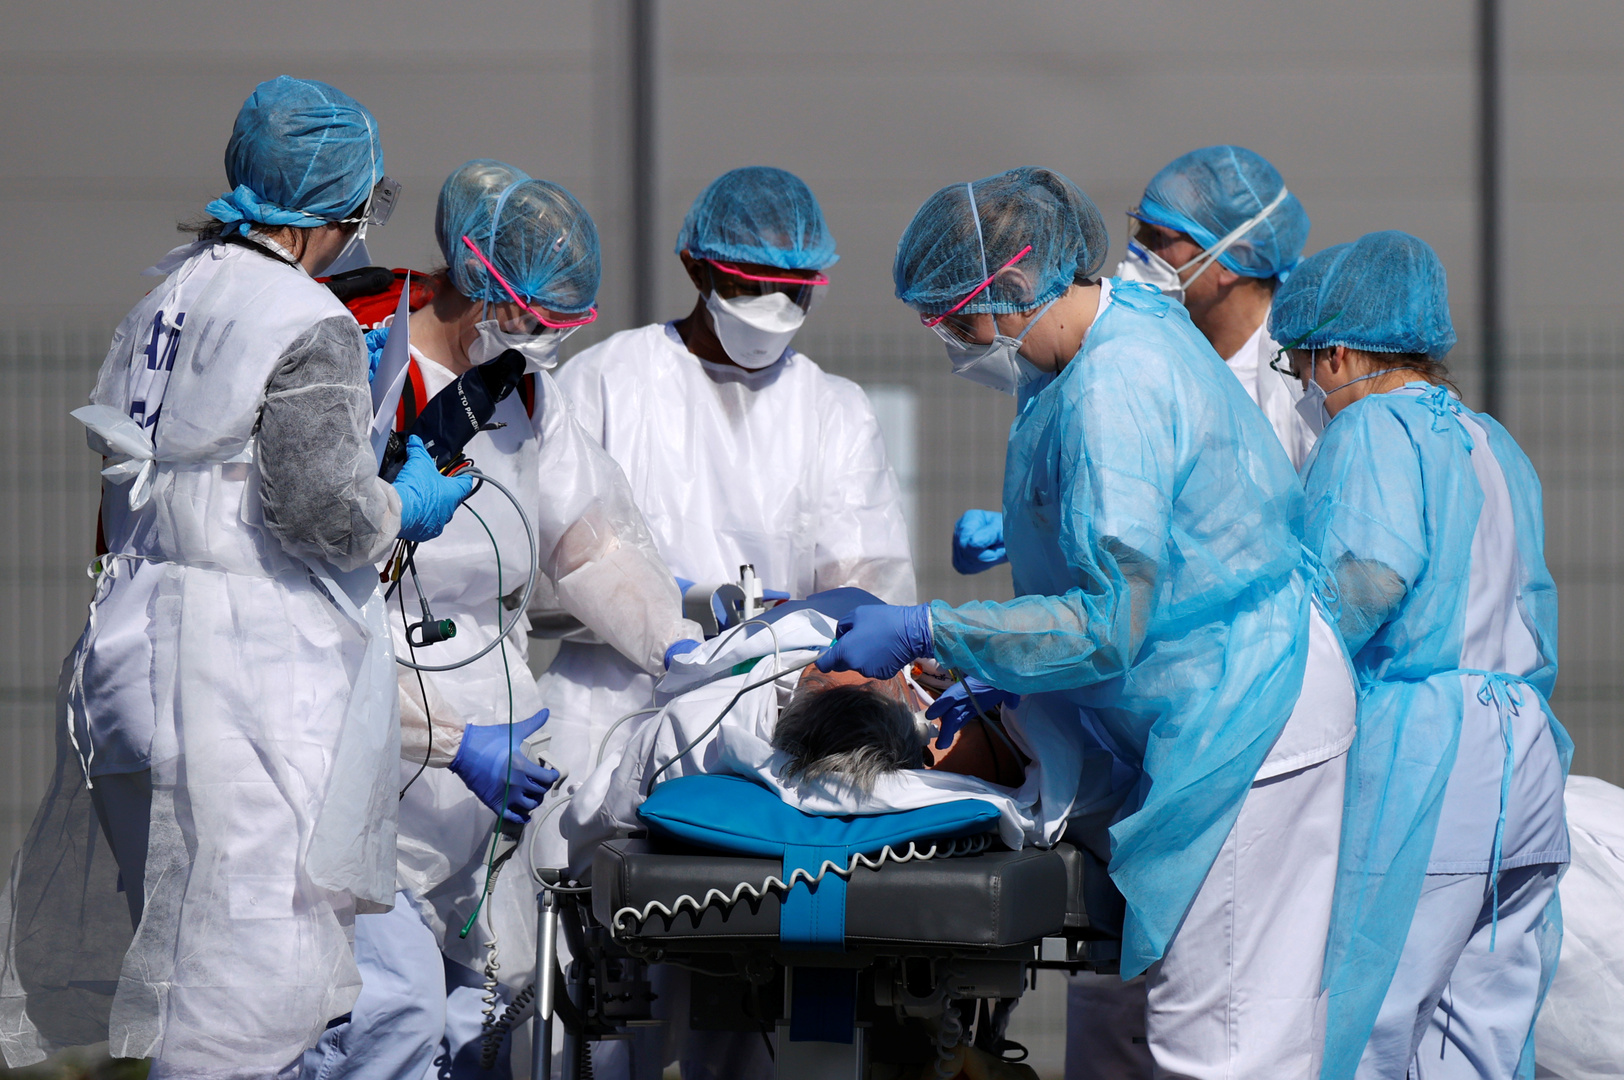 وسائل إعلام: 5 أطباء بين ضحايا كورونا في فرنسا